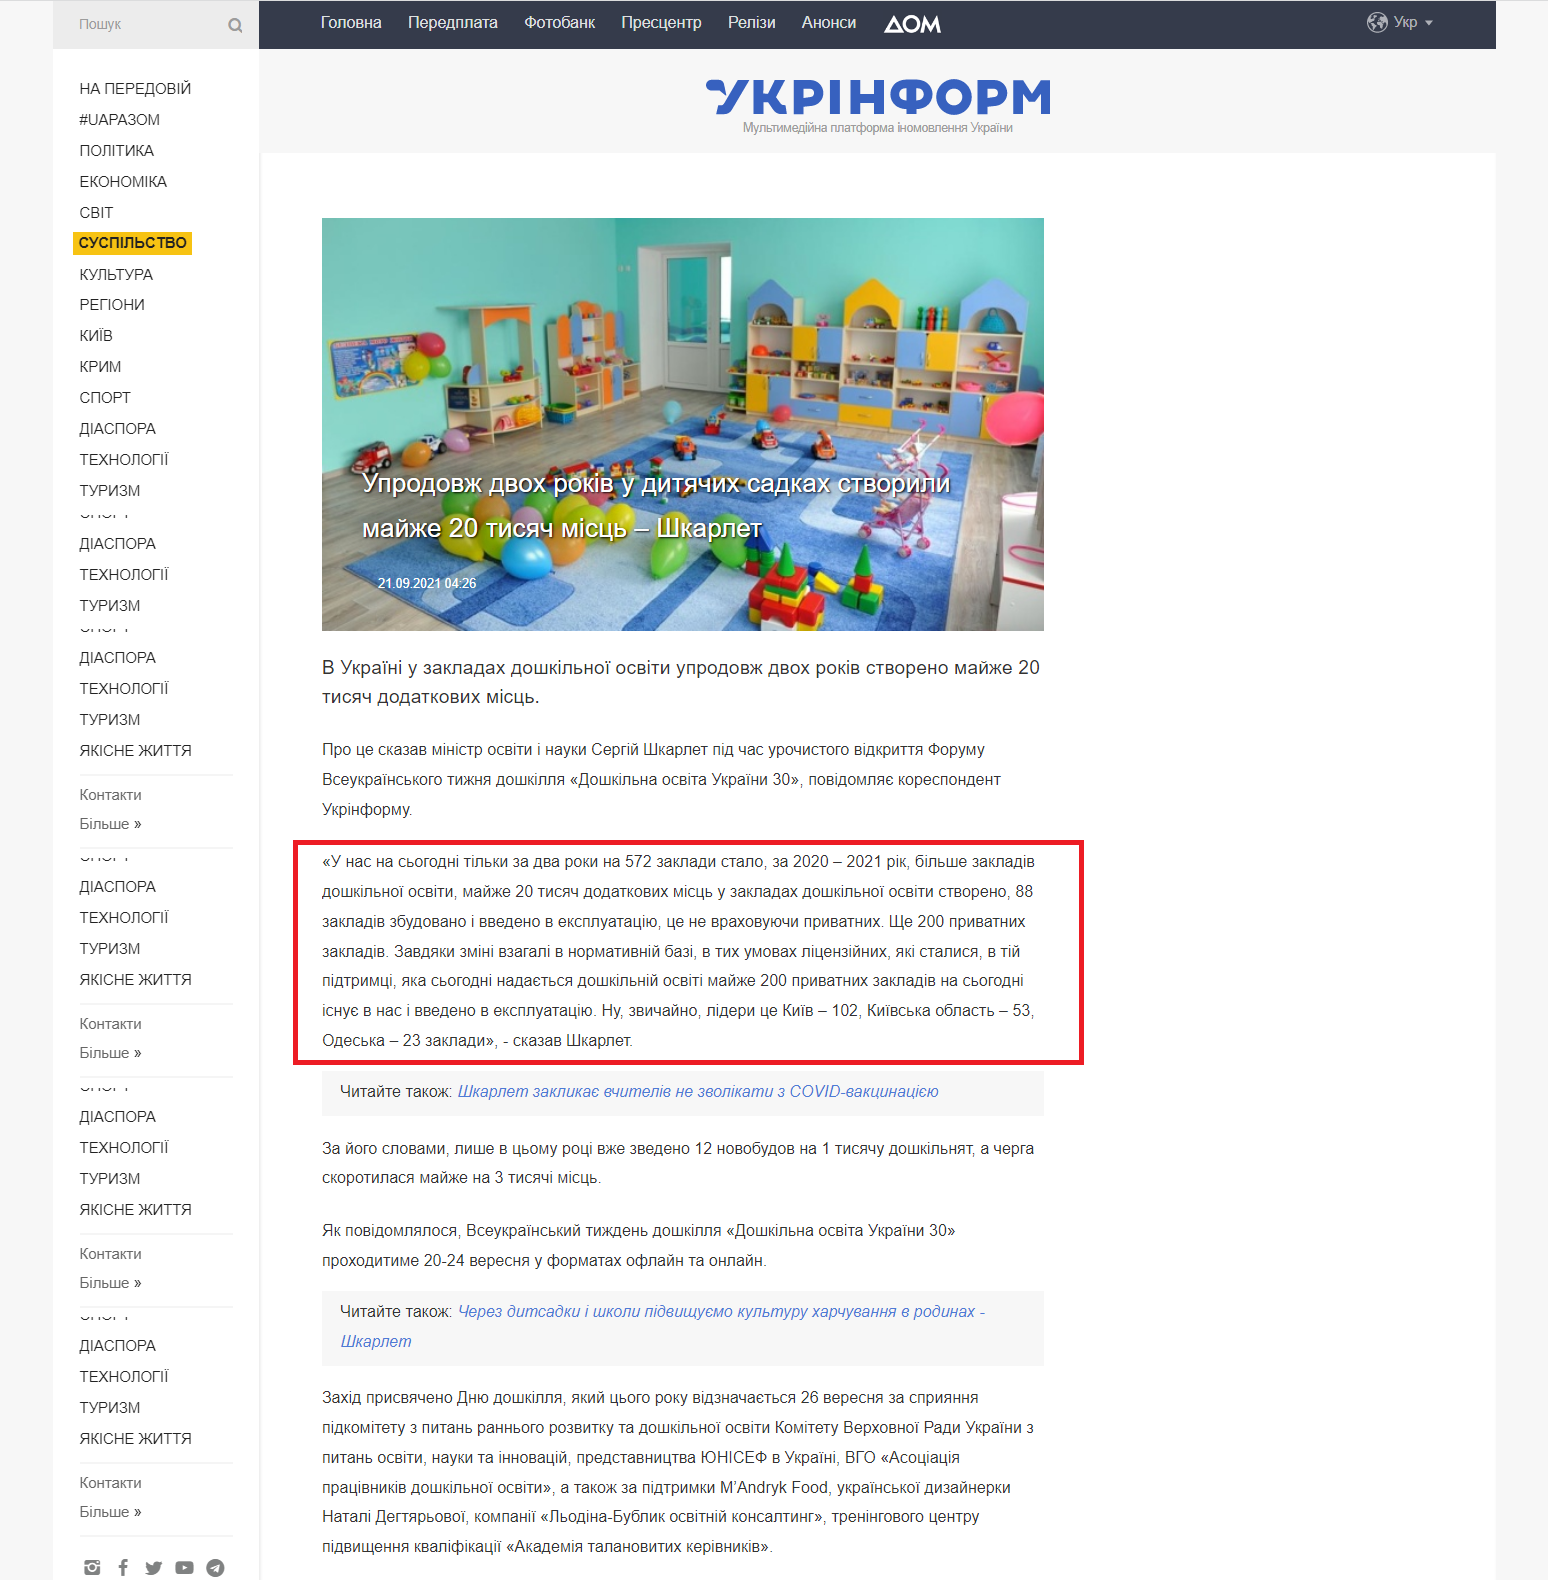 https://www.ukrinform.ua/rubric-society/3319037-uprodovz-dvoh-rokiv-u-ditacih-sadkah-stvorili-majze-20-tisac-misc-skarlet.html